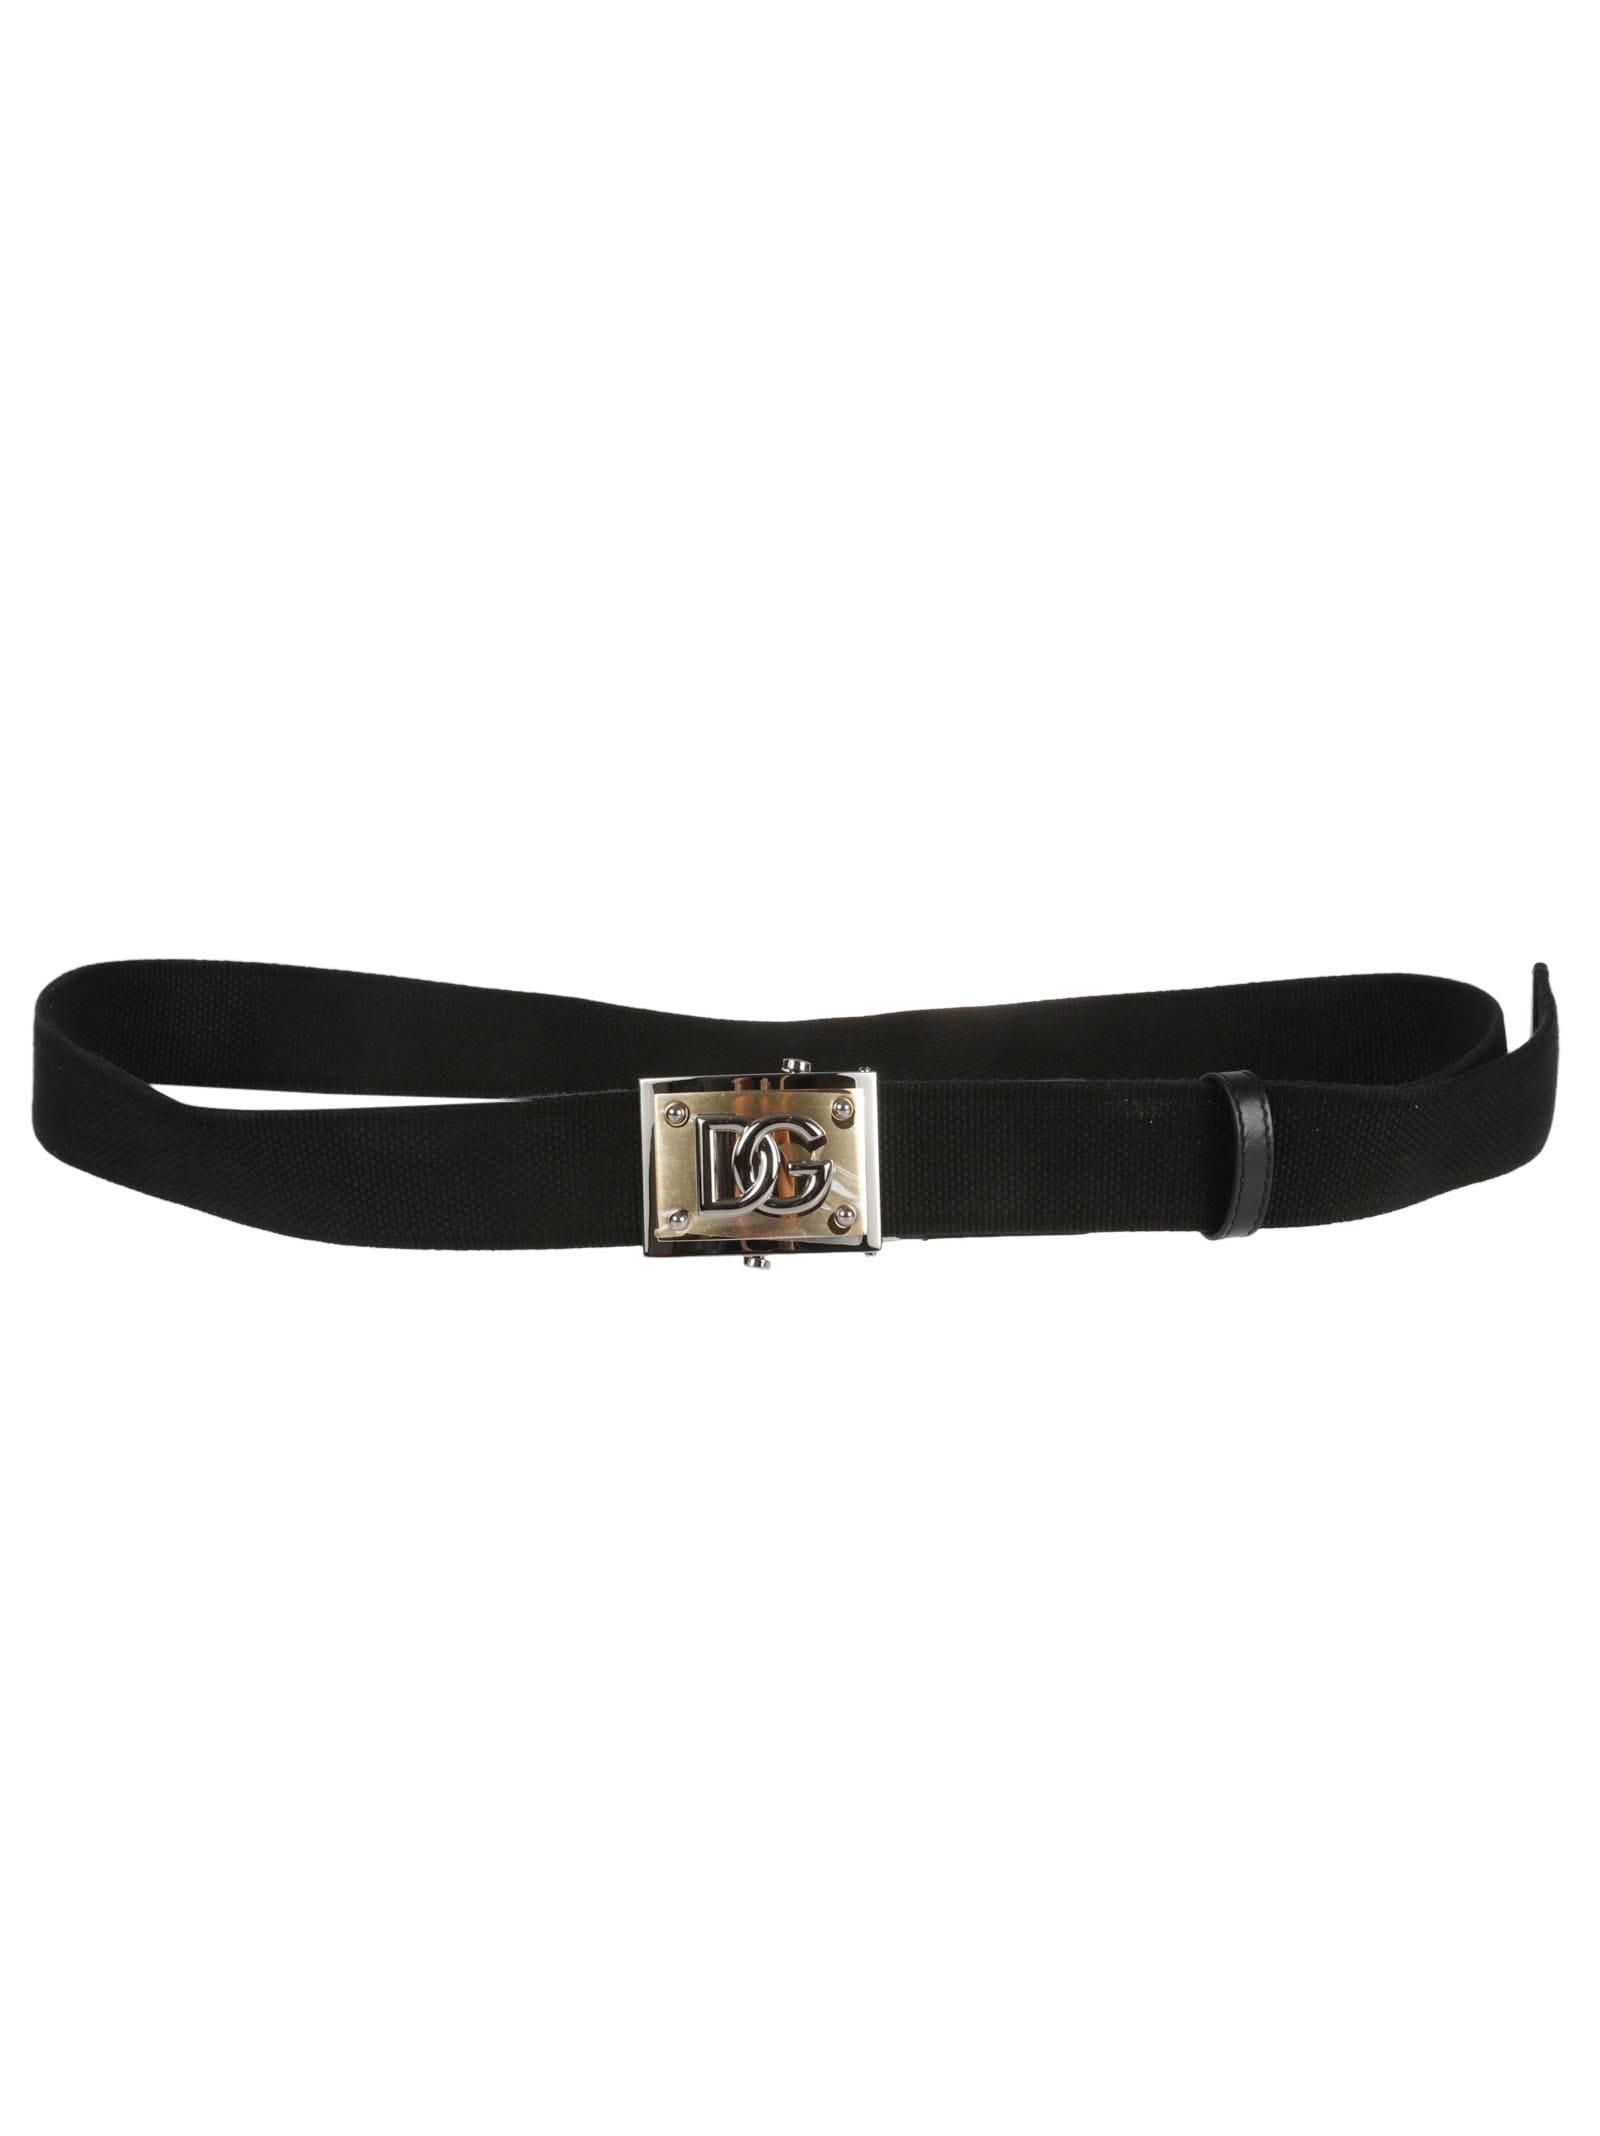 Dolce & Gabbana Continuative Belt In Black